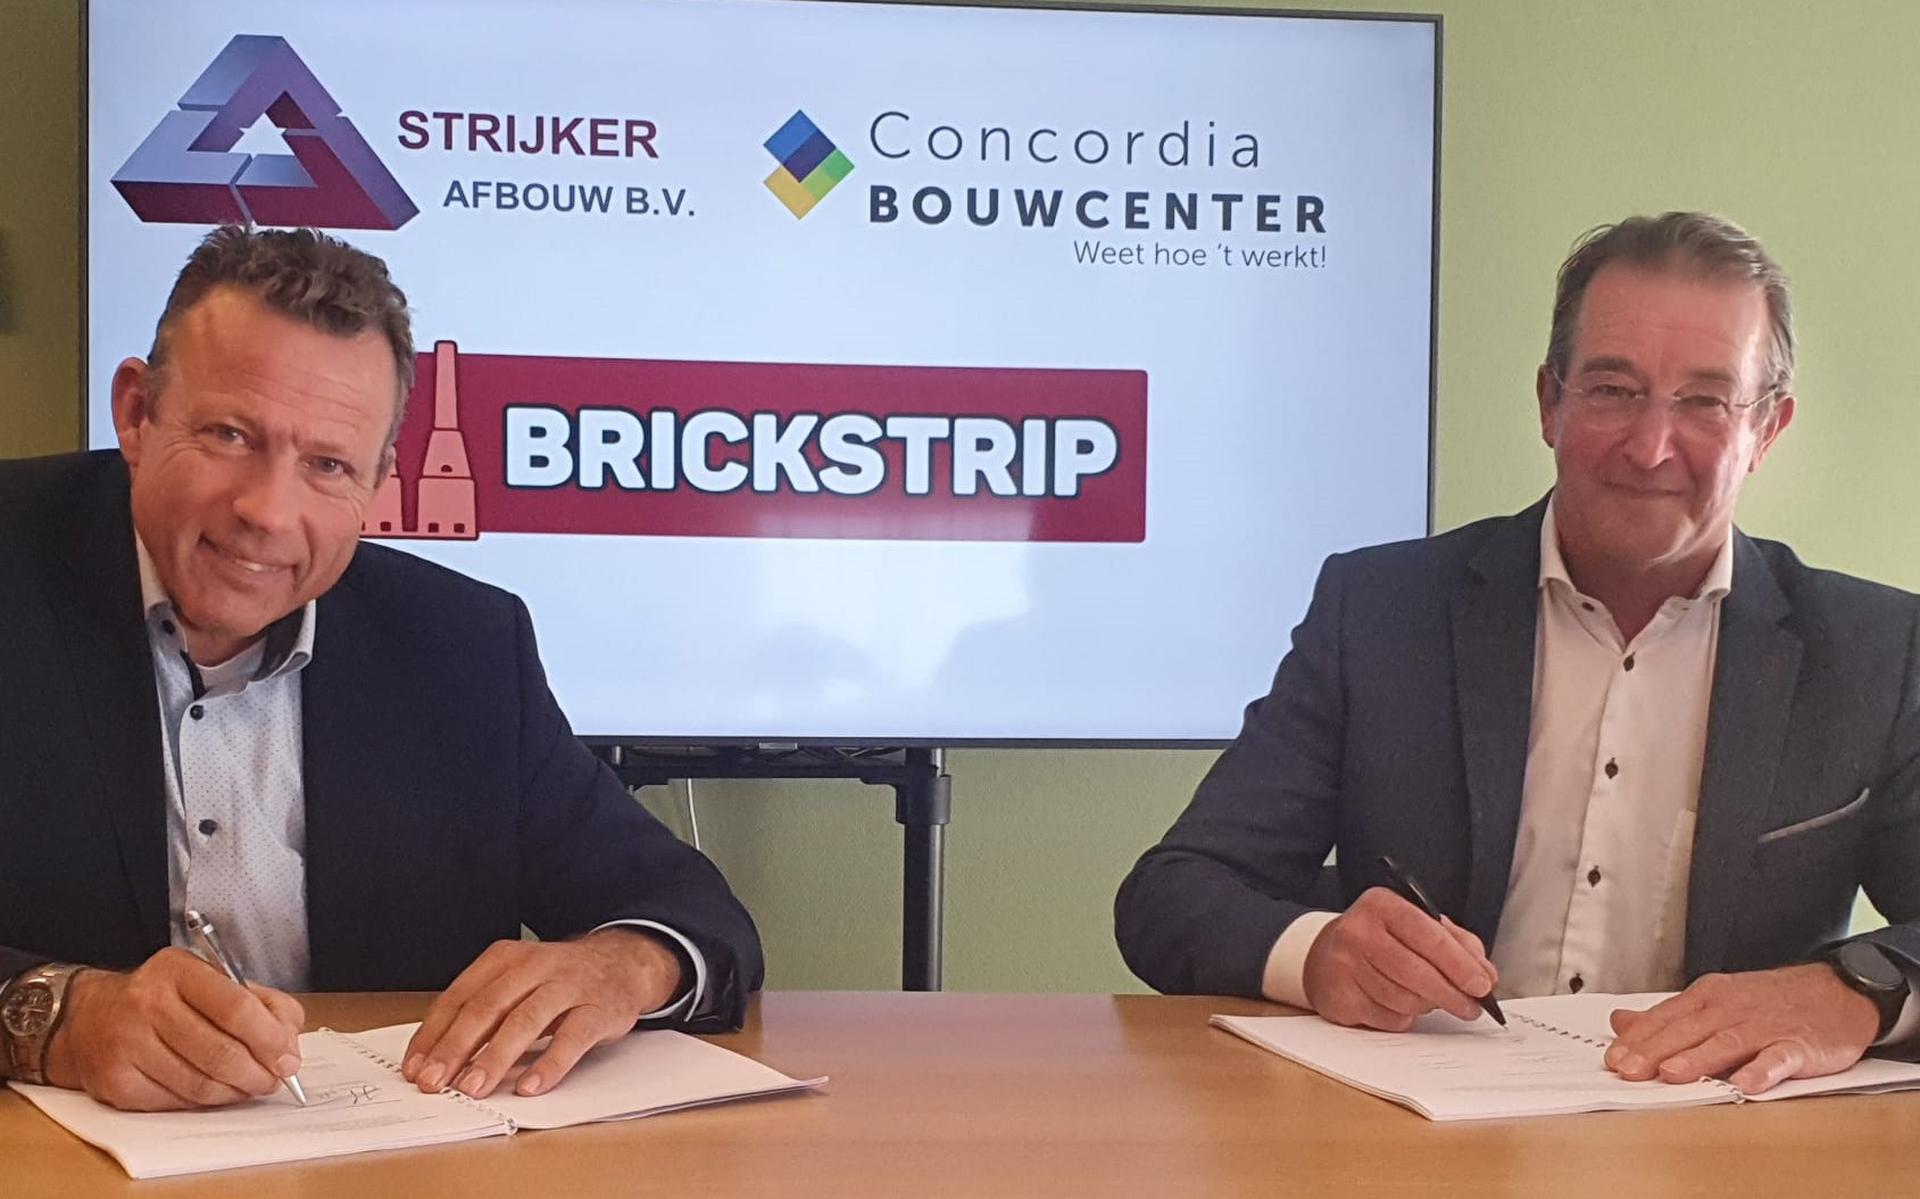 Ondertekening door Johan Veenstra (algemeen directeur Bouwcenter Concordia) en Willem Strijker (directeur Strijker Afbouw B.V.)